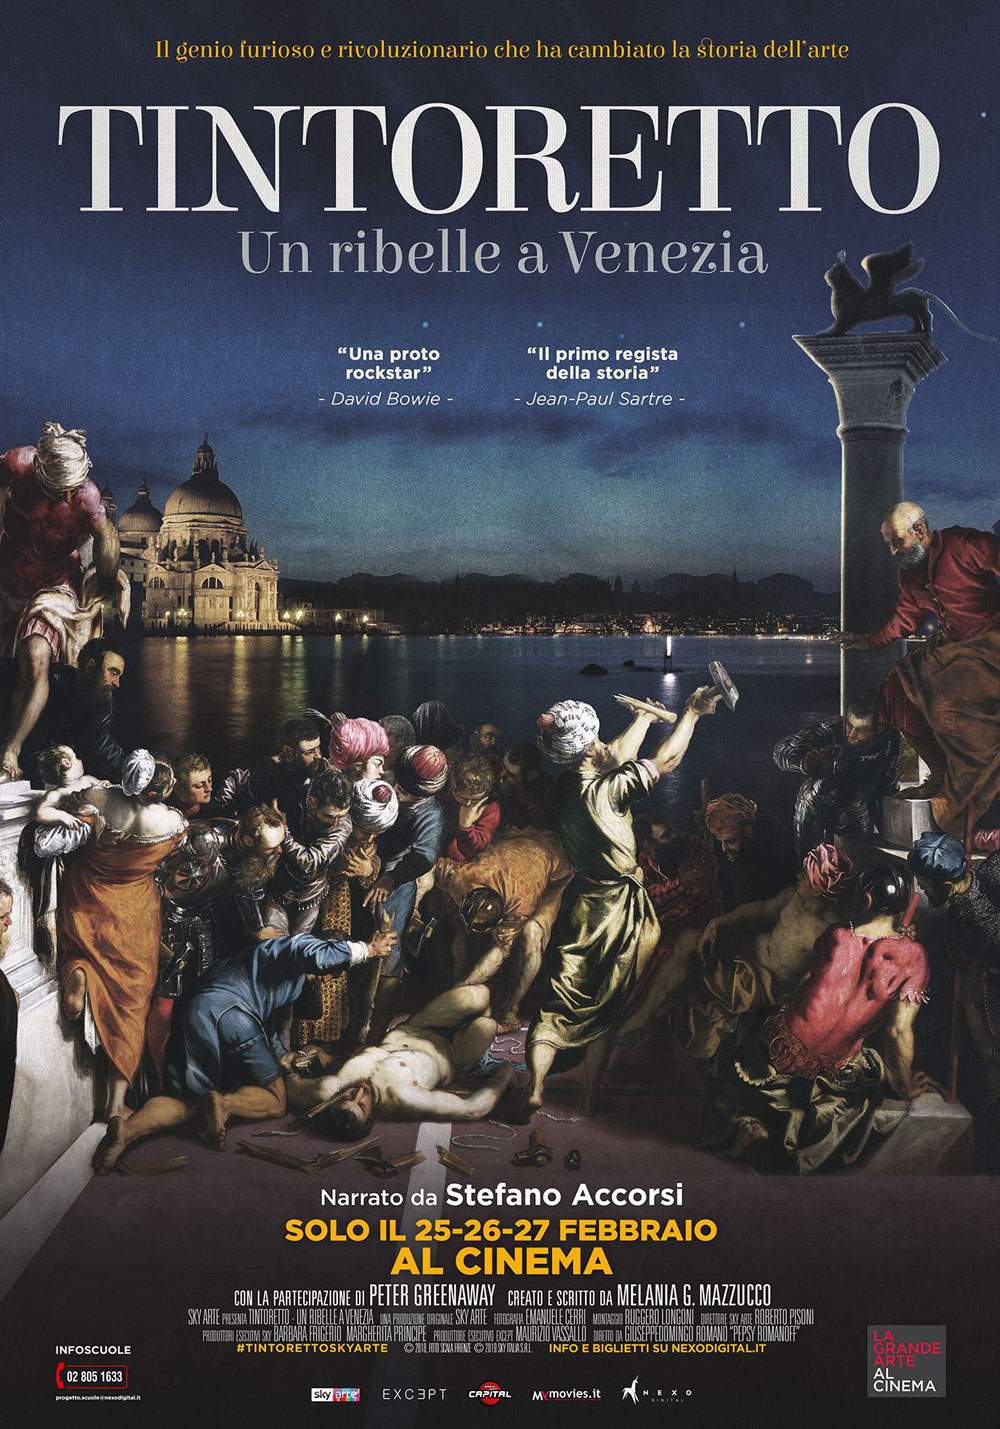 Avant-première : le docu-film consacré au Tintoret dans les cinémas italiens en février